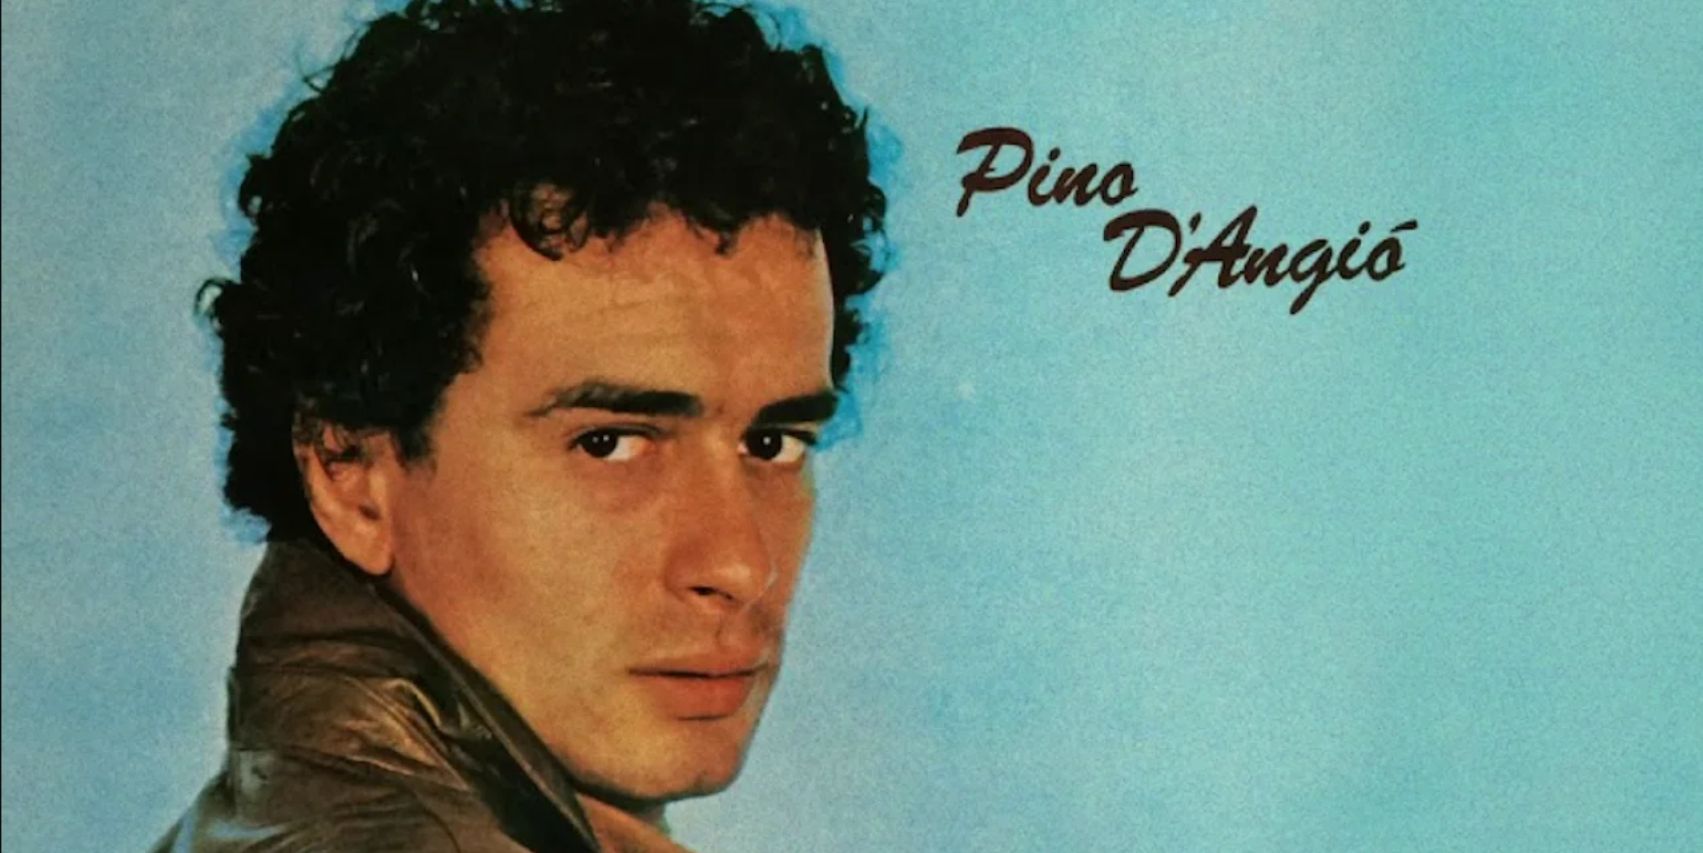 Gli anni ’80 e la musica: Come Pino d’Angiò ha catturato l’essenza di un’epoca